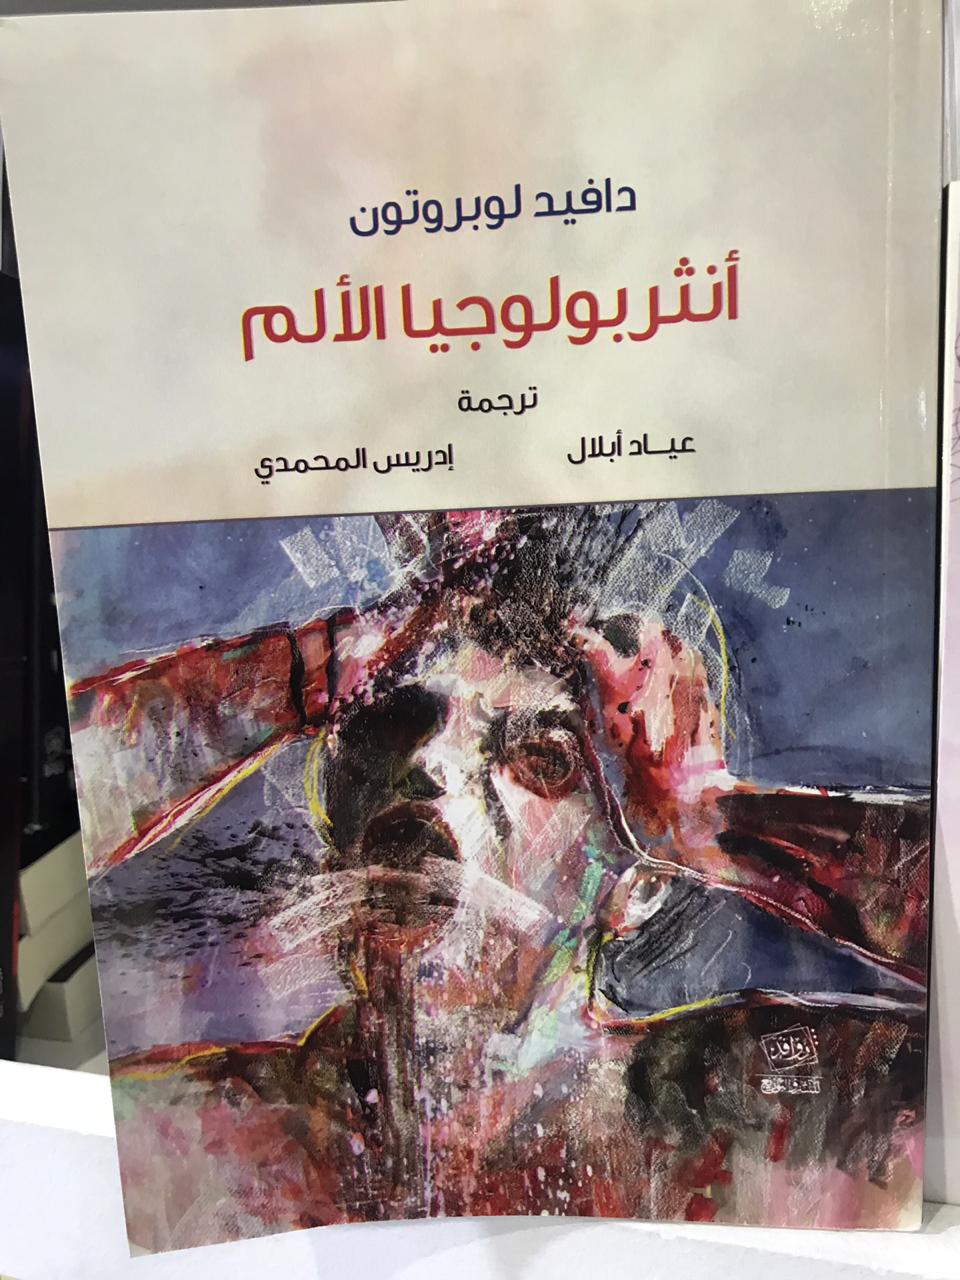 الكتب الأكثر مبيعا فى معرض القاهرة للكتاب (6)